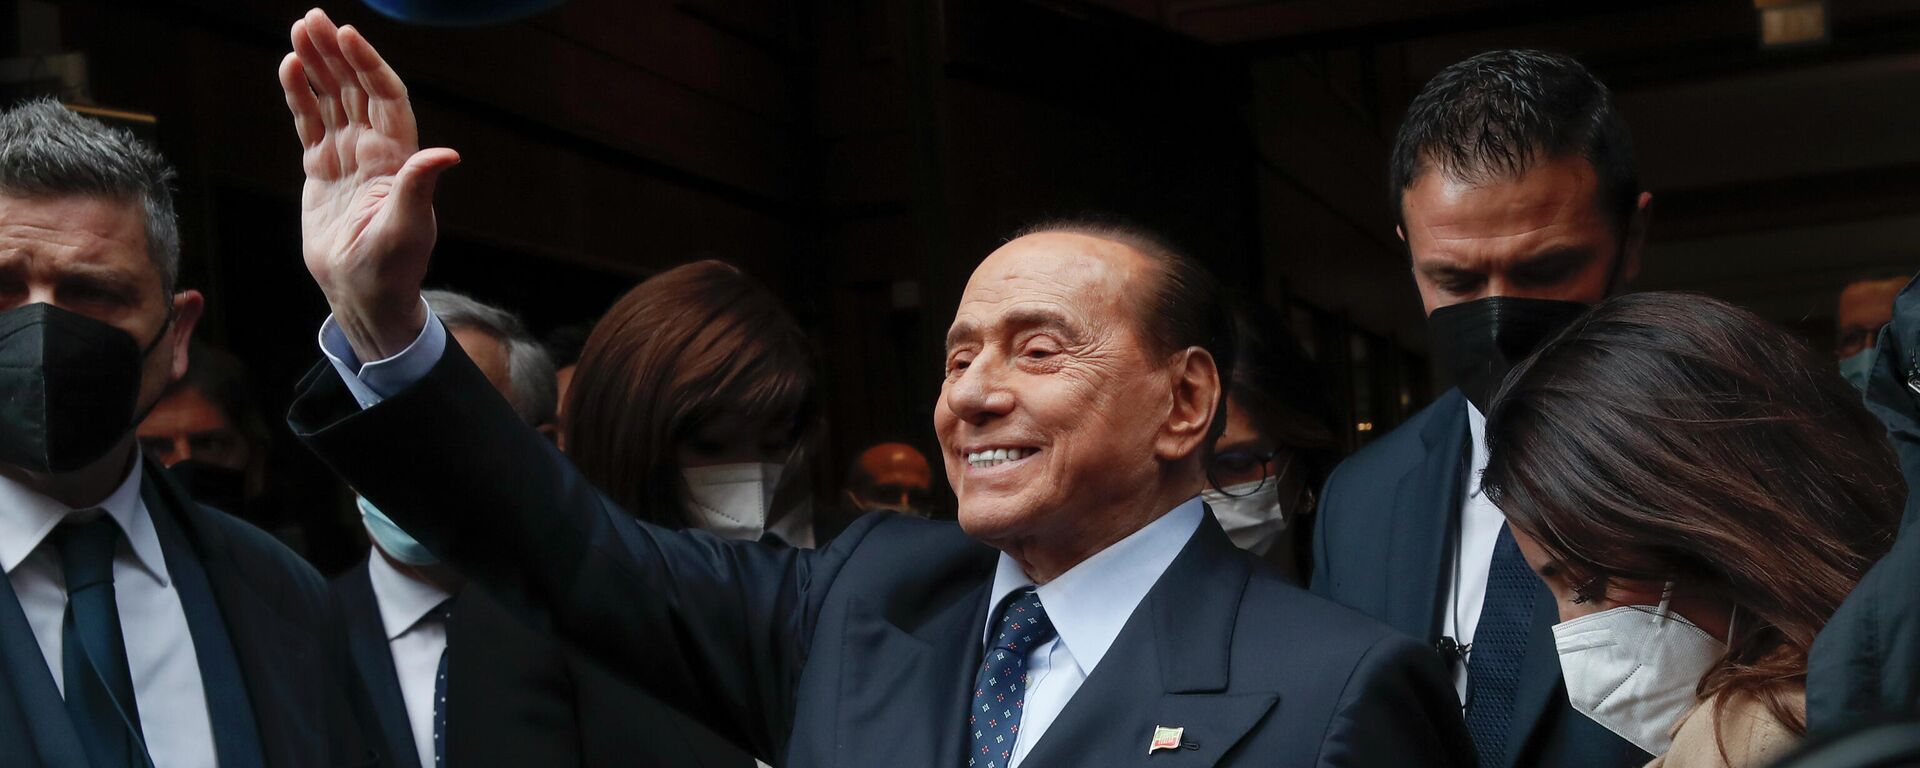 Silvio Berlusconi, candidato a la presidencia de Italia - Sputnik Mundo, 1920, 14.01.2022